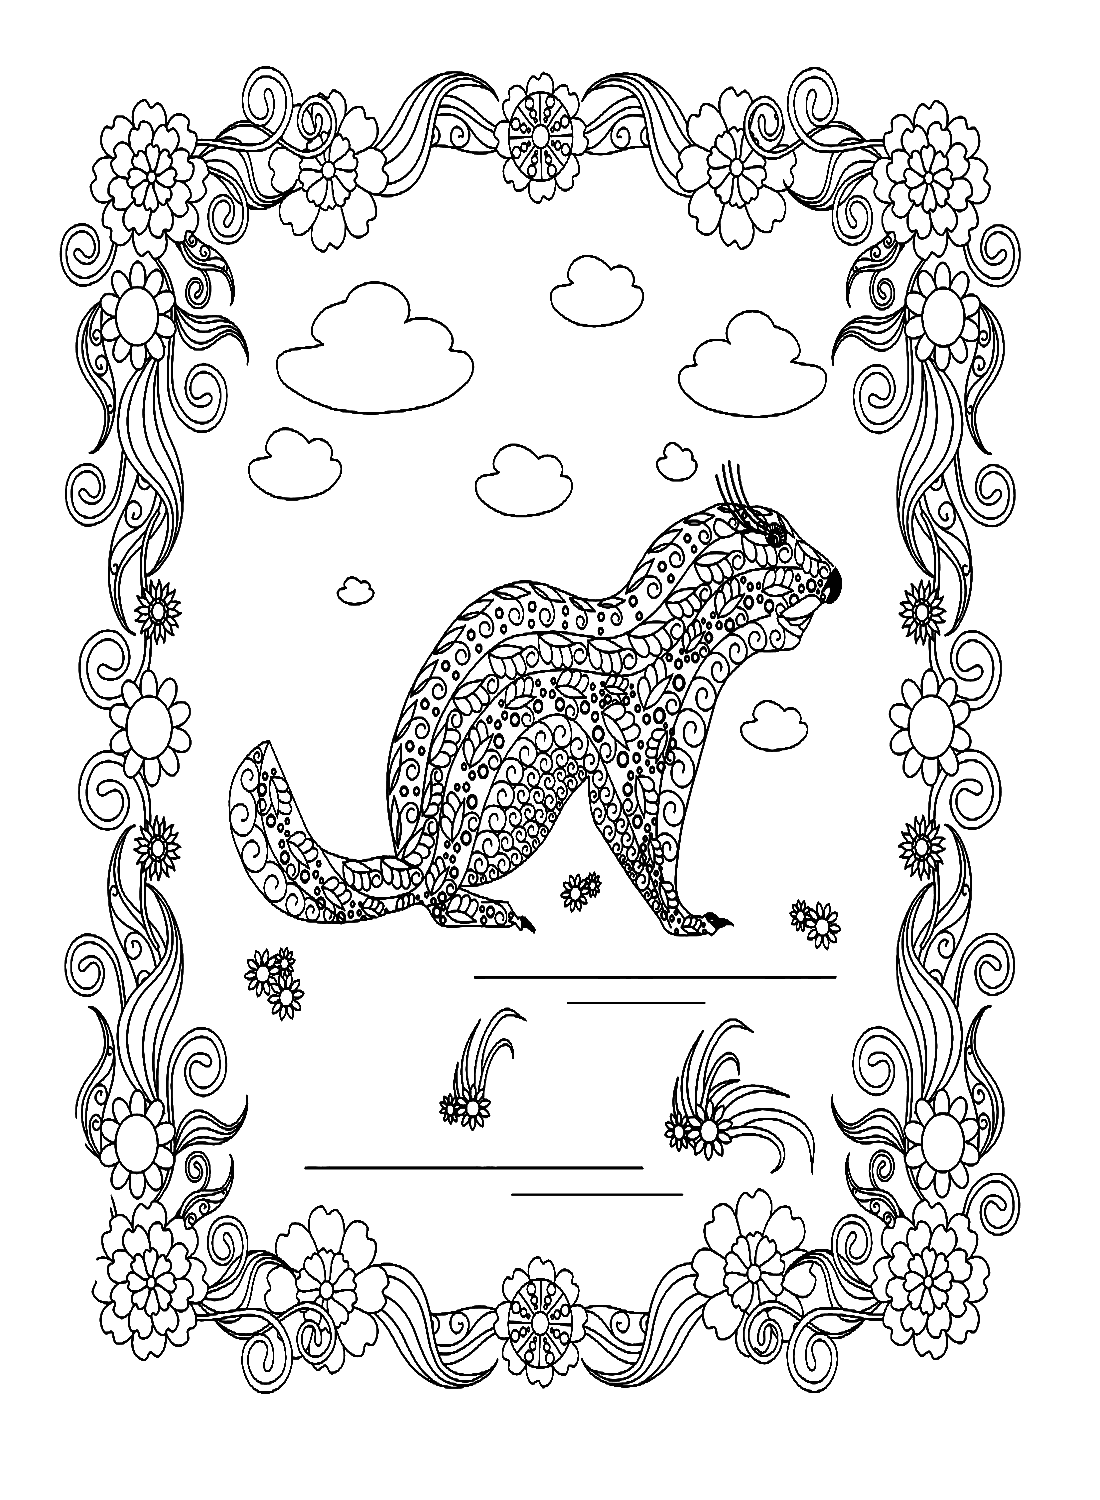 Marmot im Zentangle-Stil von Marmot